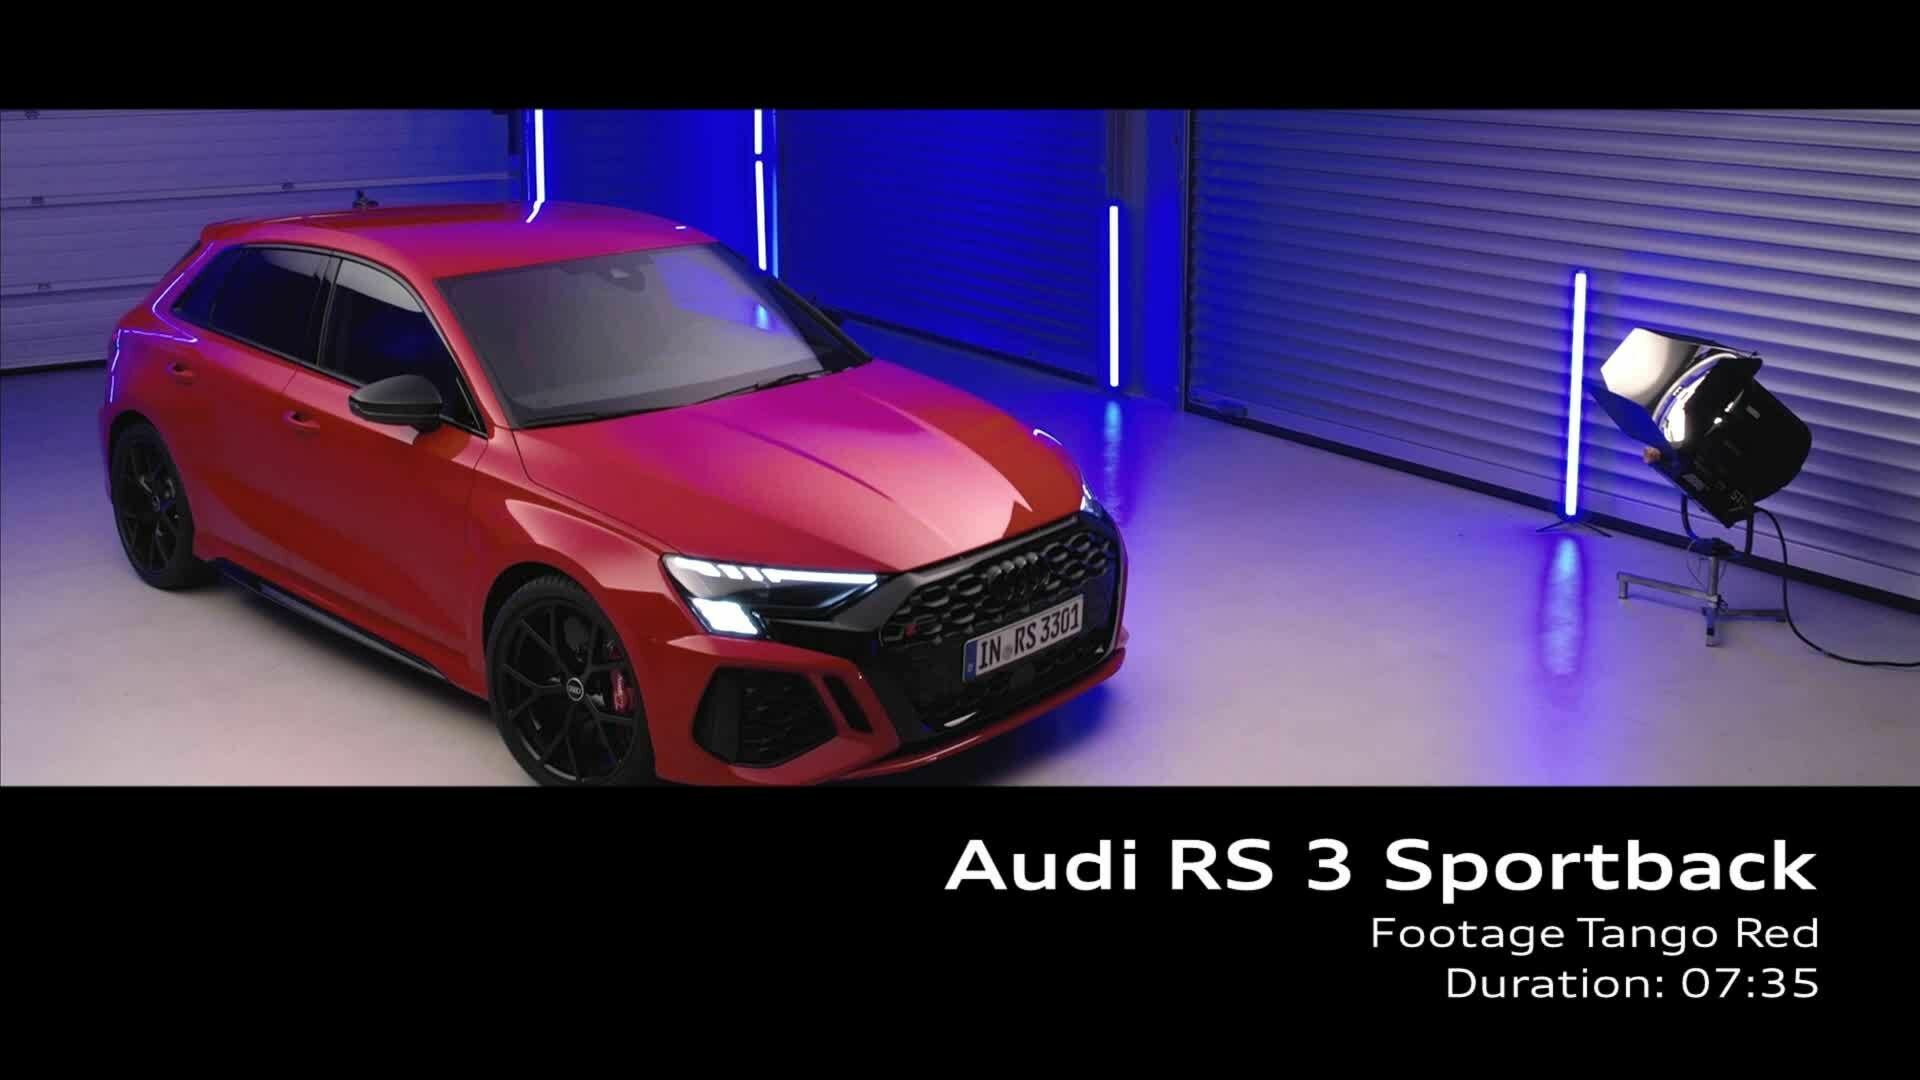 Footage: "Studio" Audi RS 3 Sportback